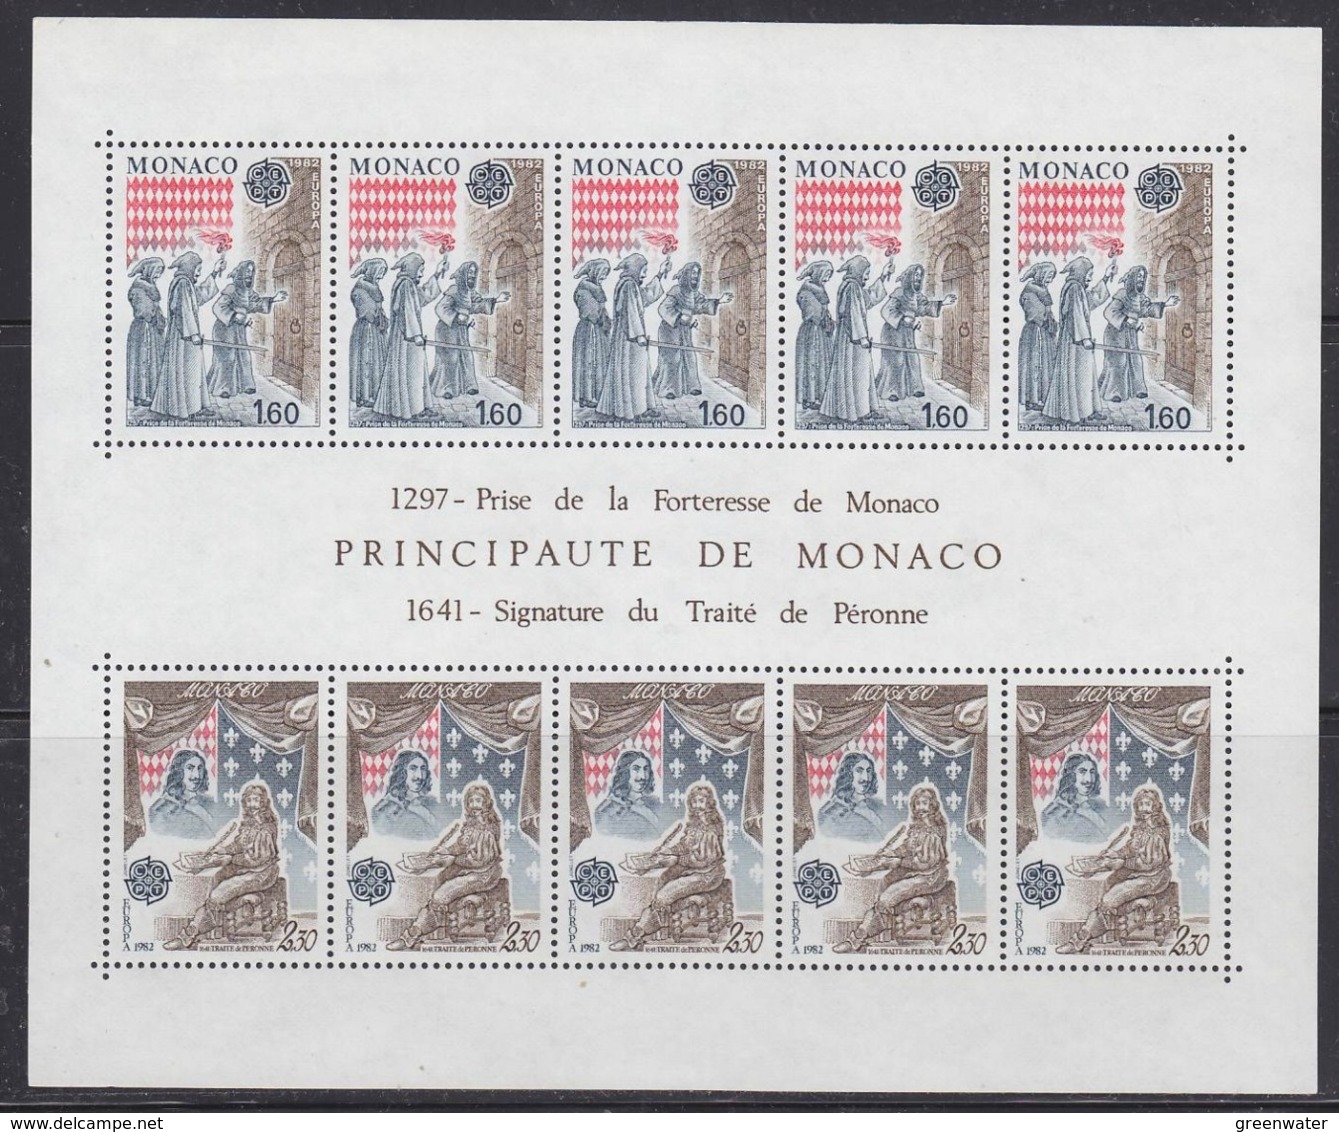 Europa Cept 1982 Monaco Sheetlet ** Mnh (44903) ROCK BOTTOM PRICE - 1982